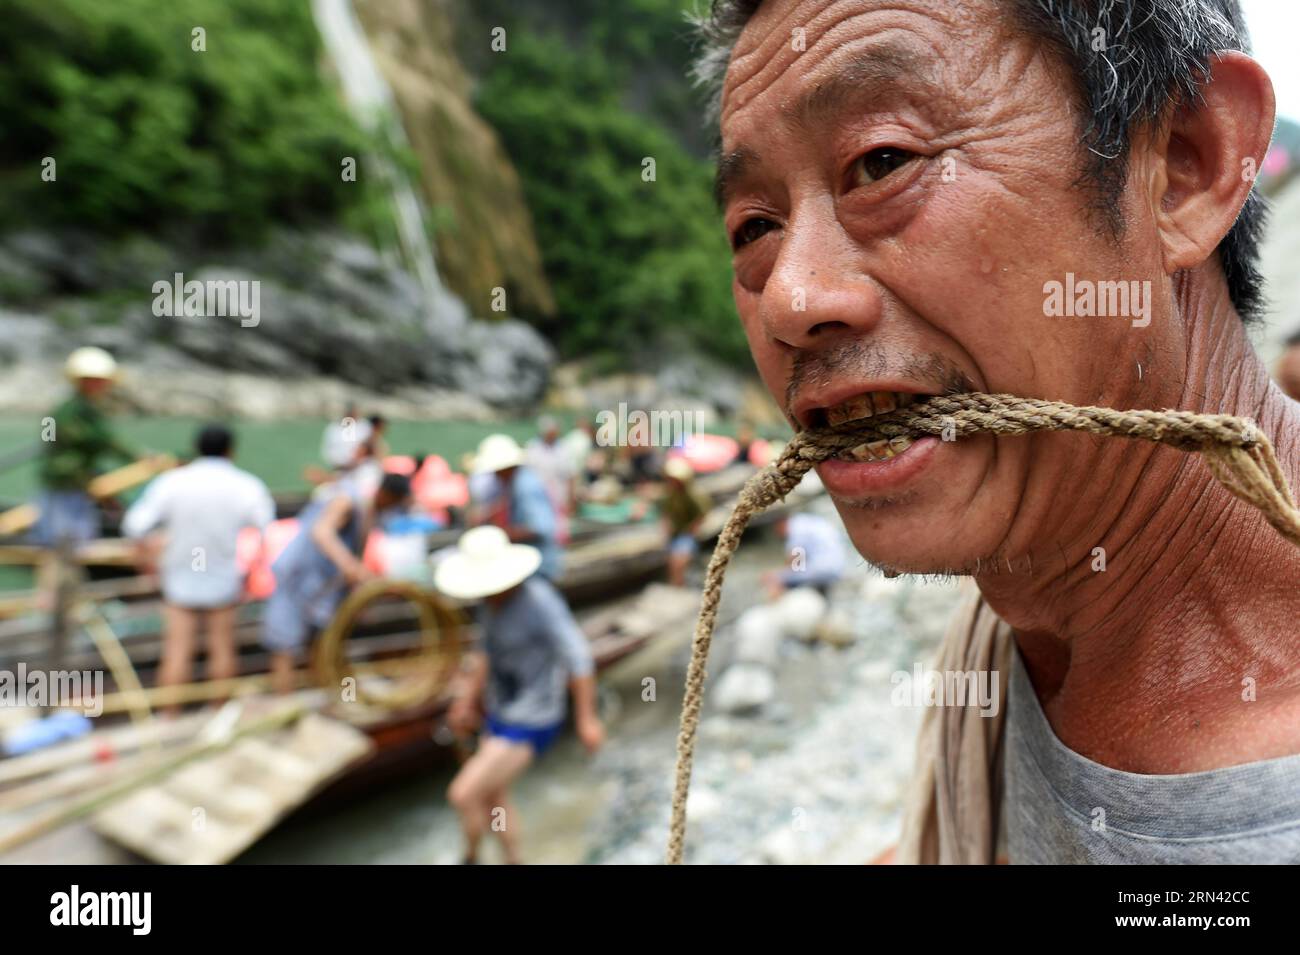 AKTUELLES ZEITGESCHEHEN Treideln - Bootsschlepper in Wuhan, China (150503) -- WUHAN, 3. Mai 2015 -- Foto aufgenommen am 30. April 2015 zeigt den Bootstracker Wu Qibiao, der die Schleppleine nach Erreichen des Endes entlang des Shennongxi-Flusses in der Provinz Badong in der zentralchinesischen Provinz Hubei nagt. Bereits in den 1950er Jahren waren die Einheimischen stark auf Bootsschlepper angewiesen, da der Verkehr recht begrenzt war. Da Shennongxi keine Zufahrt zu den Straßen hat, ist es der einzige Weg hinein und raus, und daher war es damals sehr beliebt, ein Fährtensucher zu sein. Ende der 1980er Jahre, mit neuen Straßen in den Bergen und der Entwicklung des Tourismus, viele davon Stockfoto